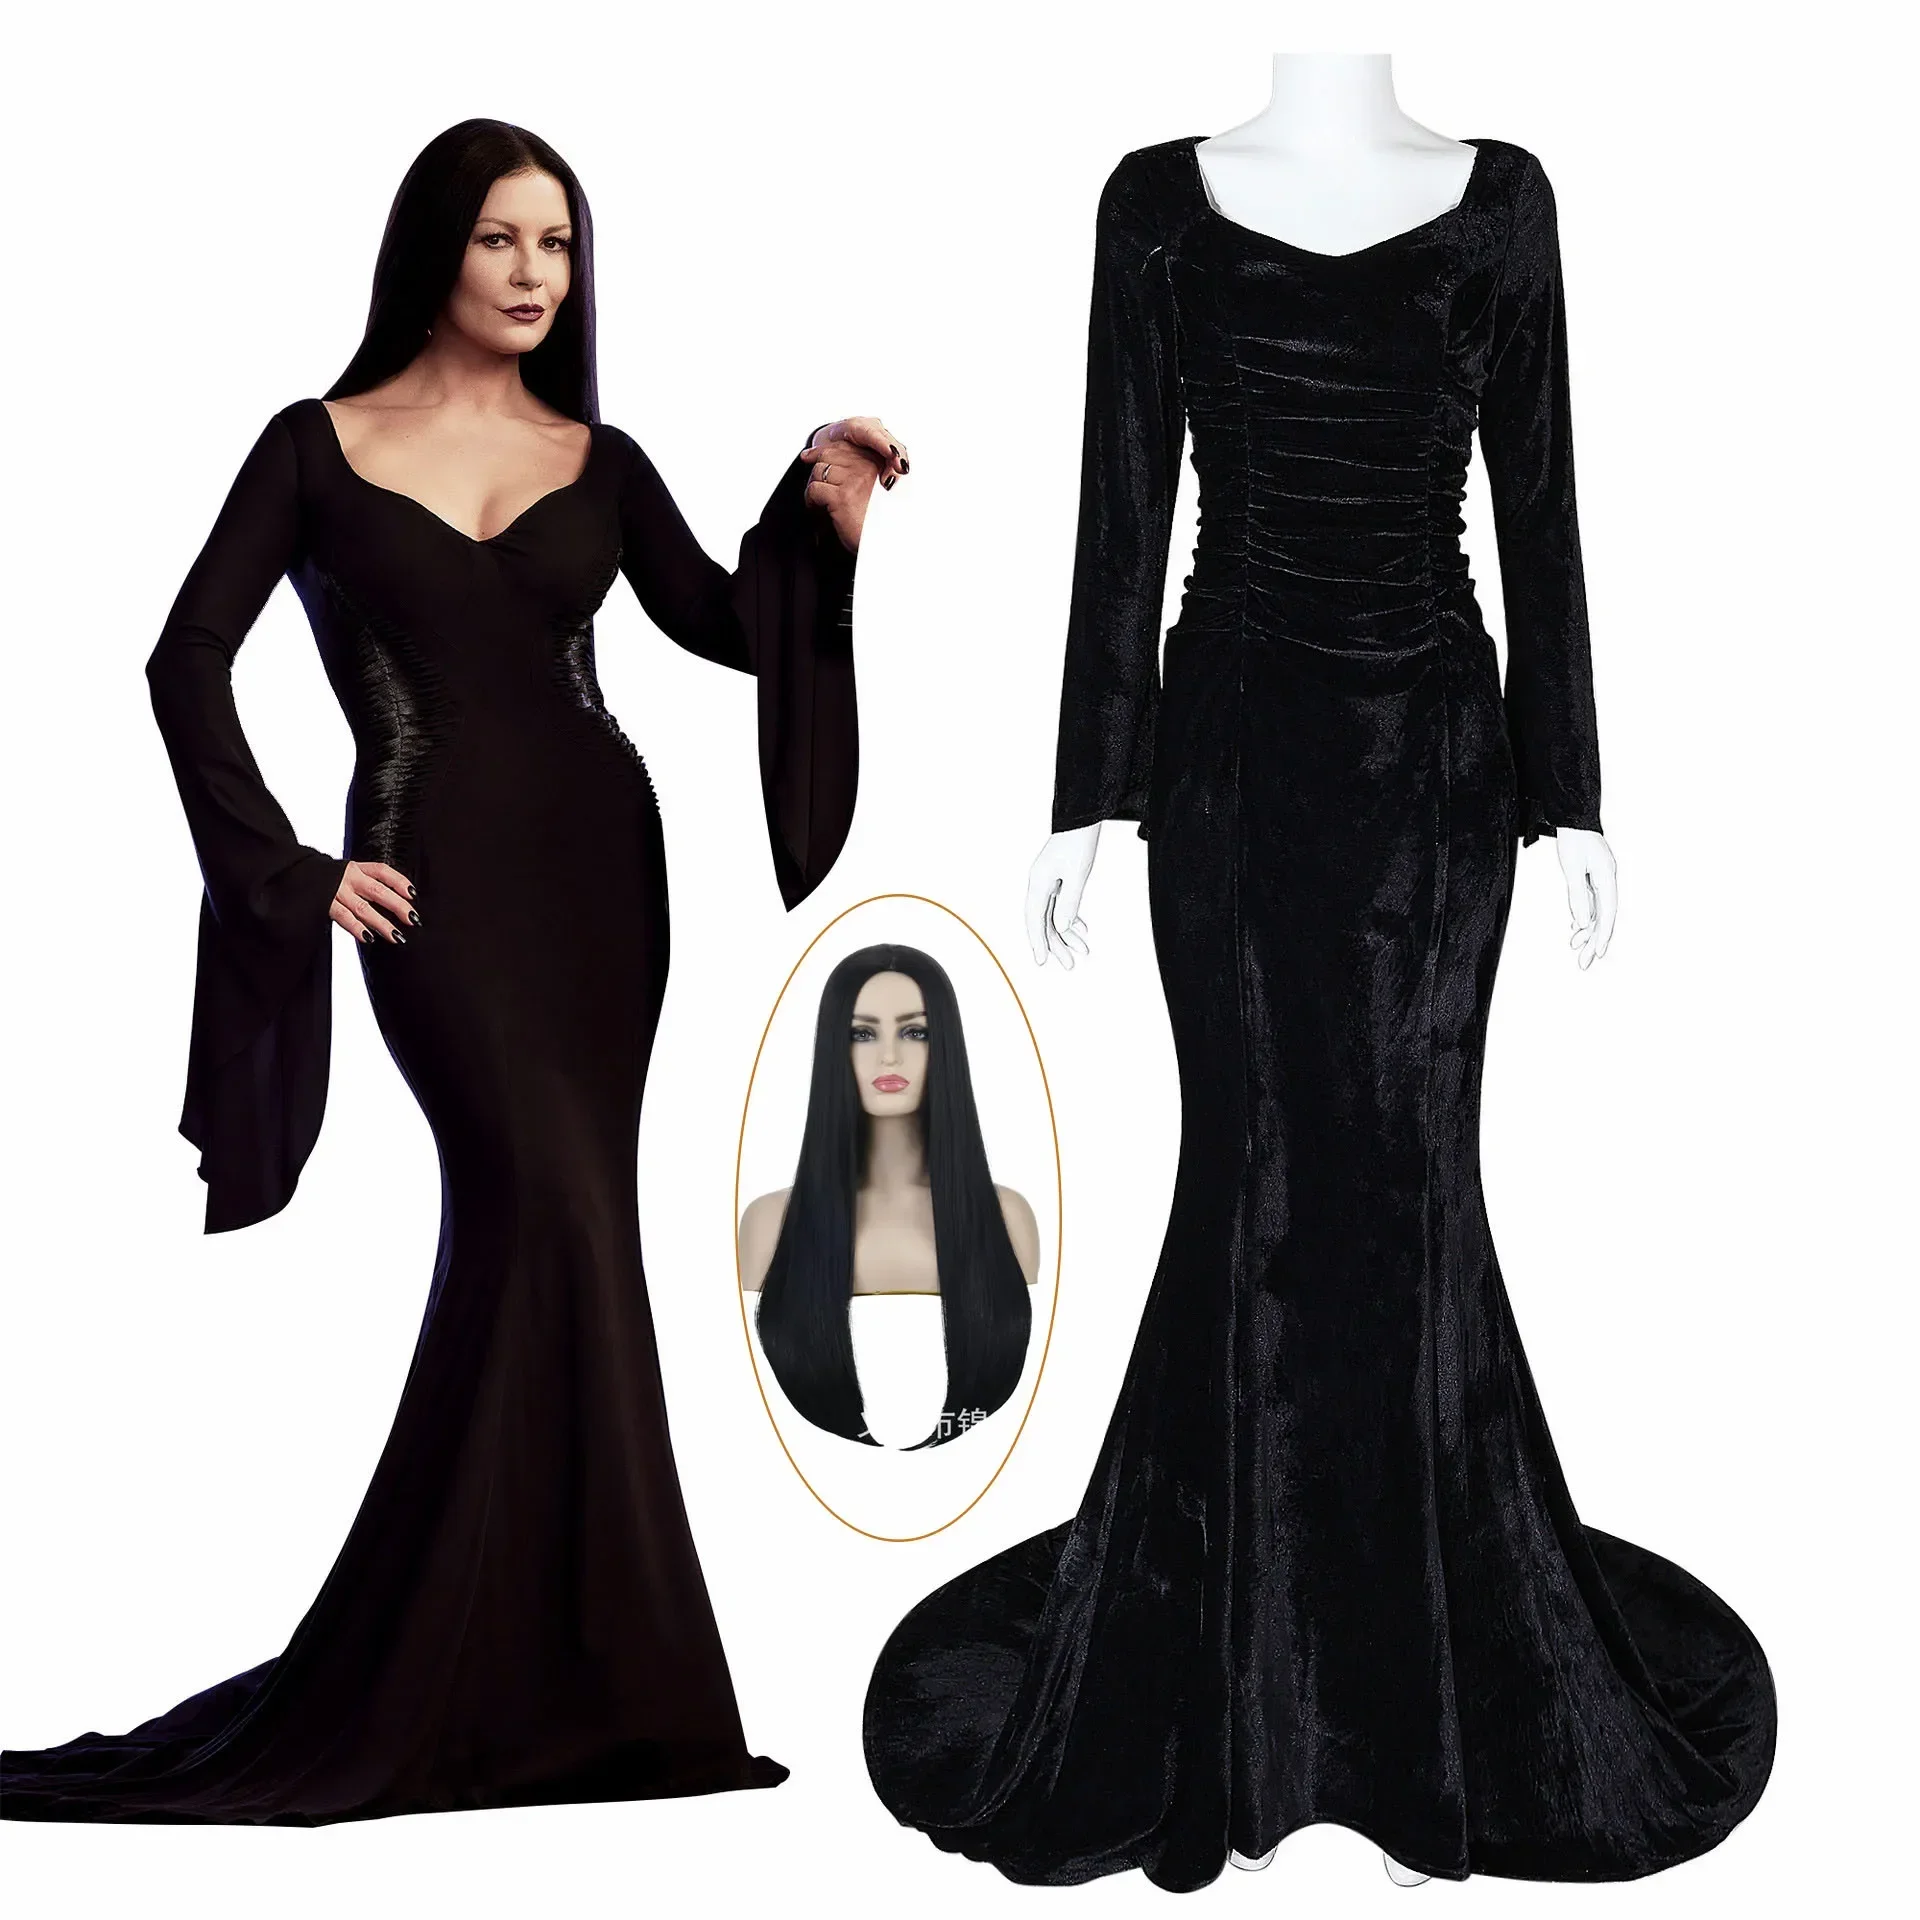 

Disfraz De Cosplay De Morticia Para Mujer Peluca Negra Sexy Ajustada Vestido De Noche De Fiesta Para Halloween Y Carnaval Cos